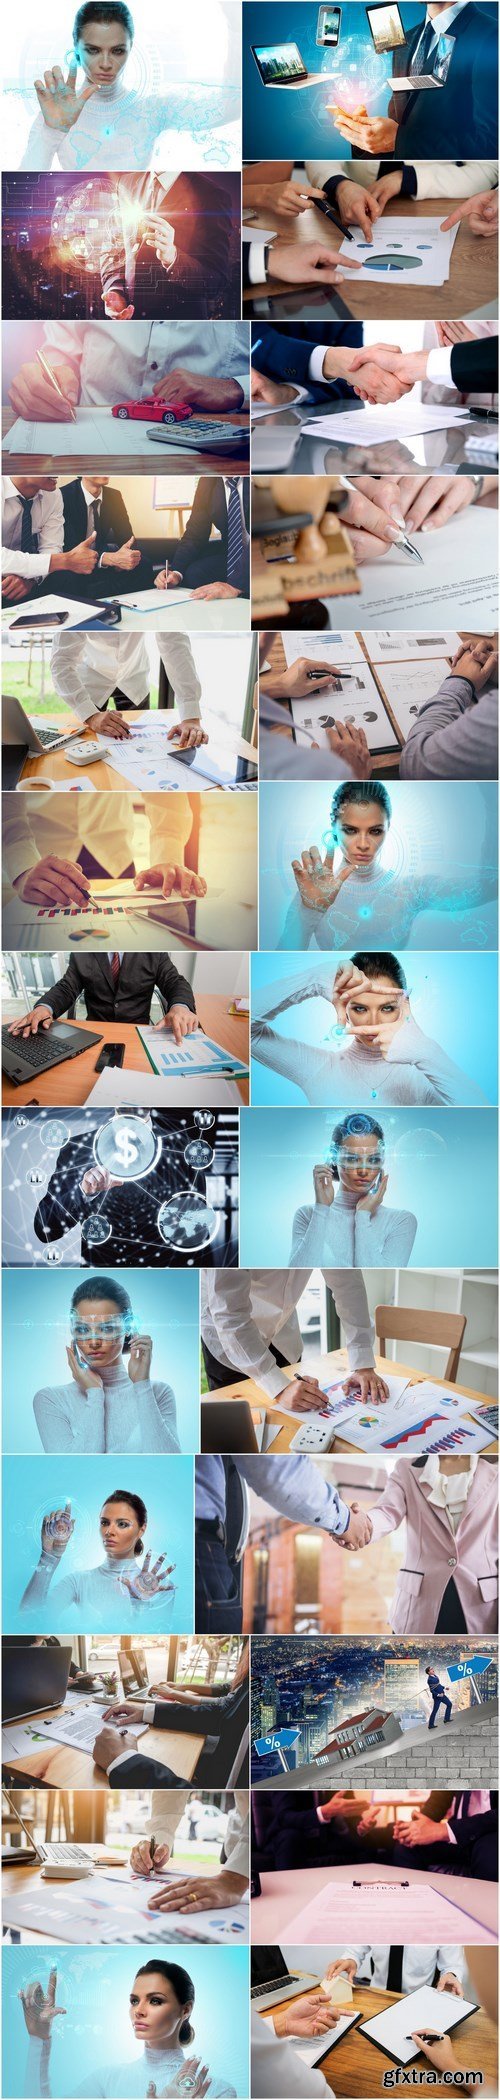 Business, work, business of technology - 26xHQ JPEG